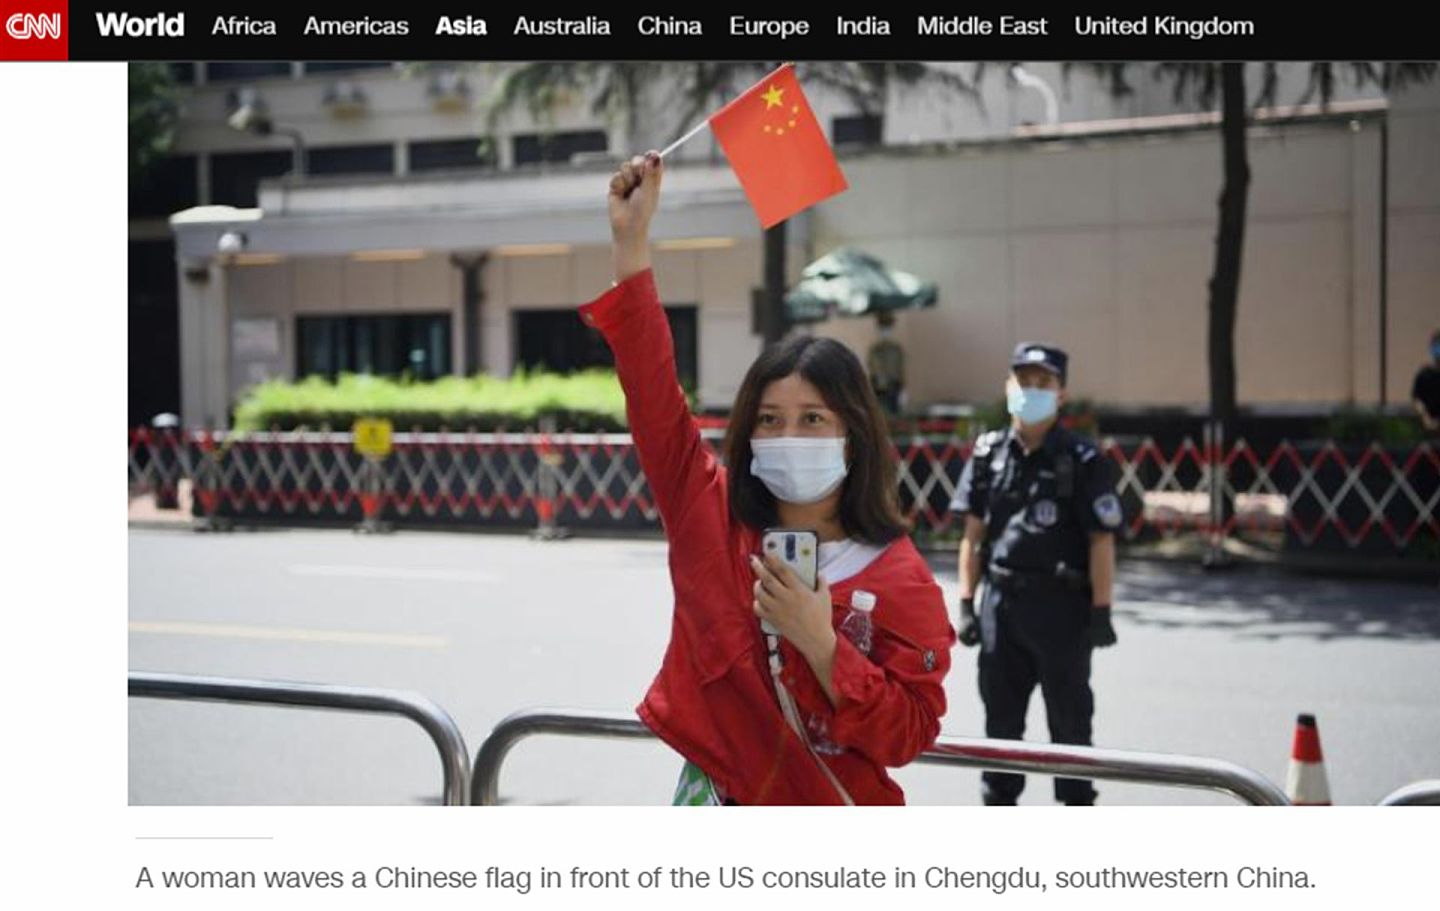 一位中国女孩在美国驻成都领事馆前举起中国国旗，这一幕正好被CNN直播镜头捕捉。（CNN新闻网截图）